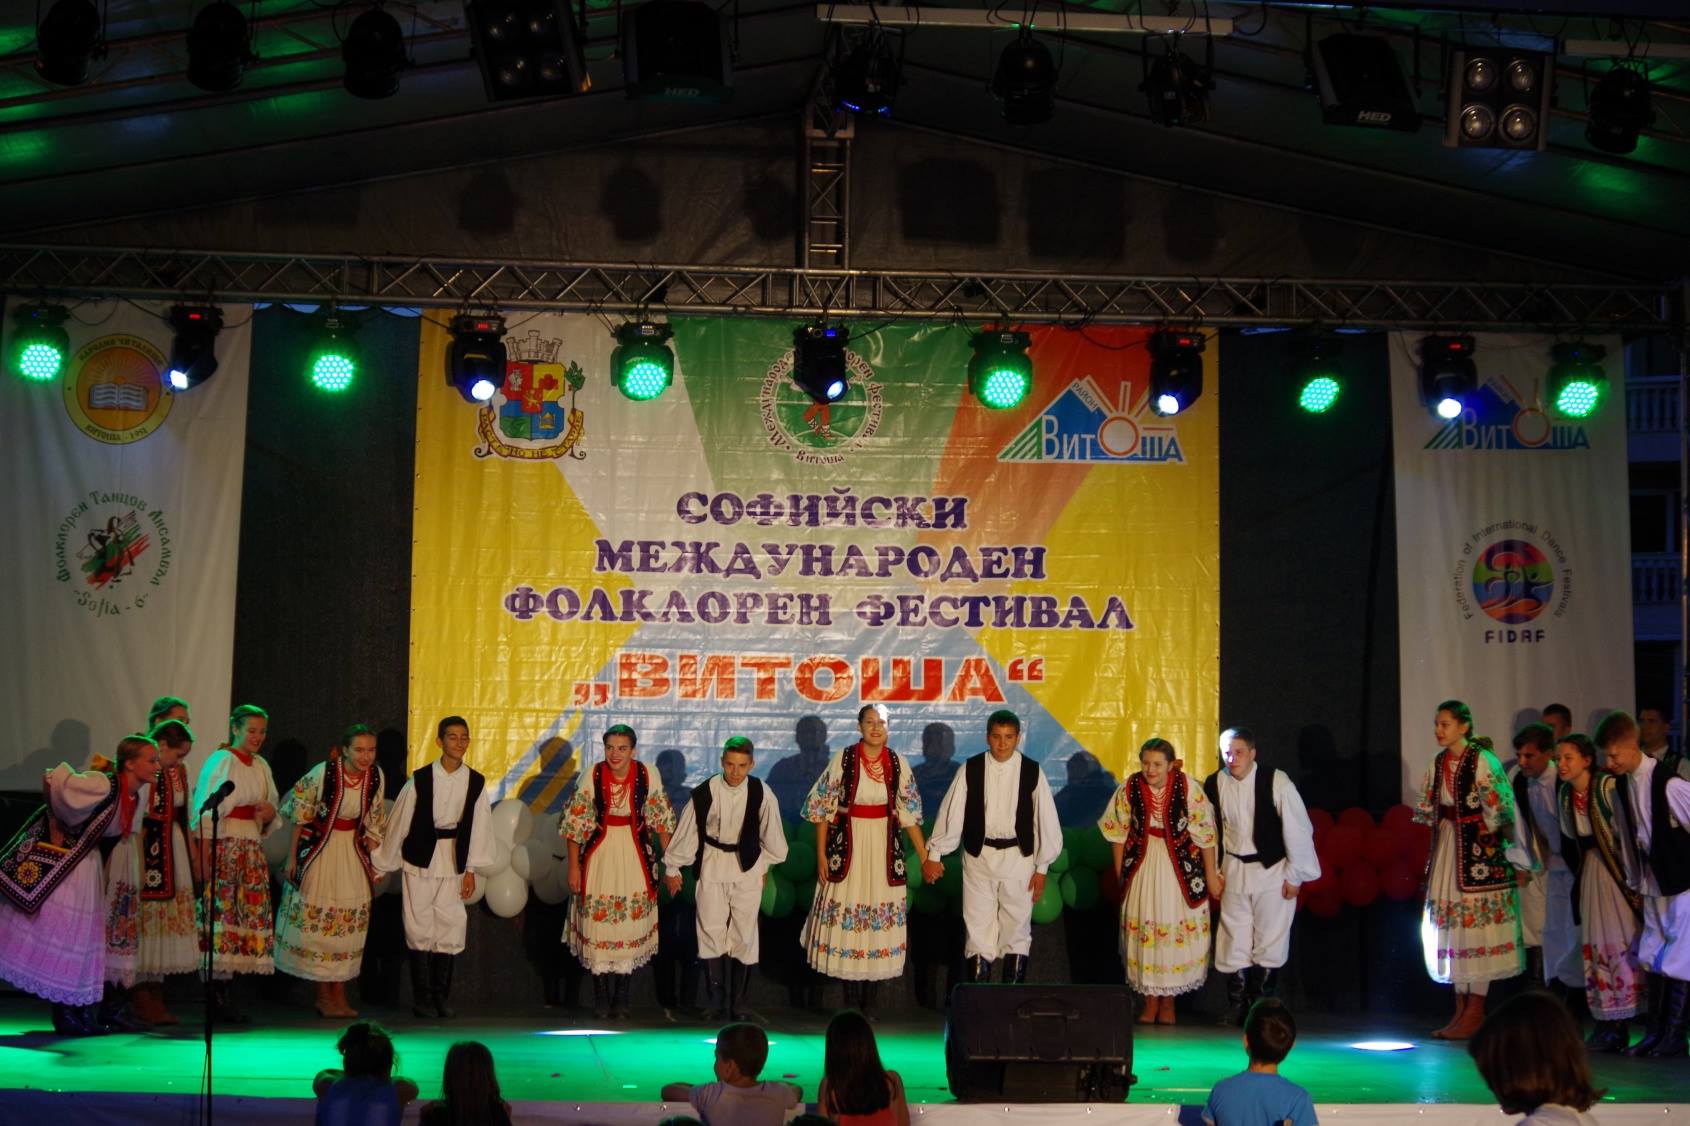 FA Šiljakovina Bugarska festival FB (5)